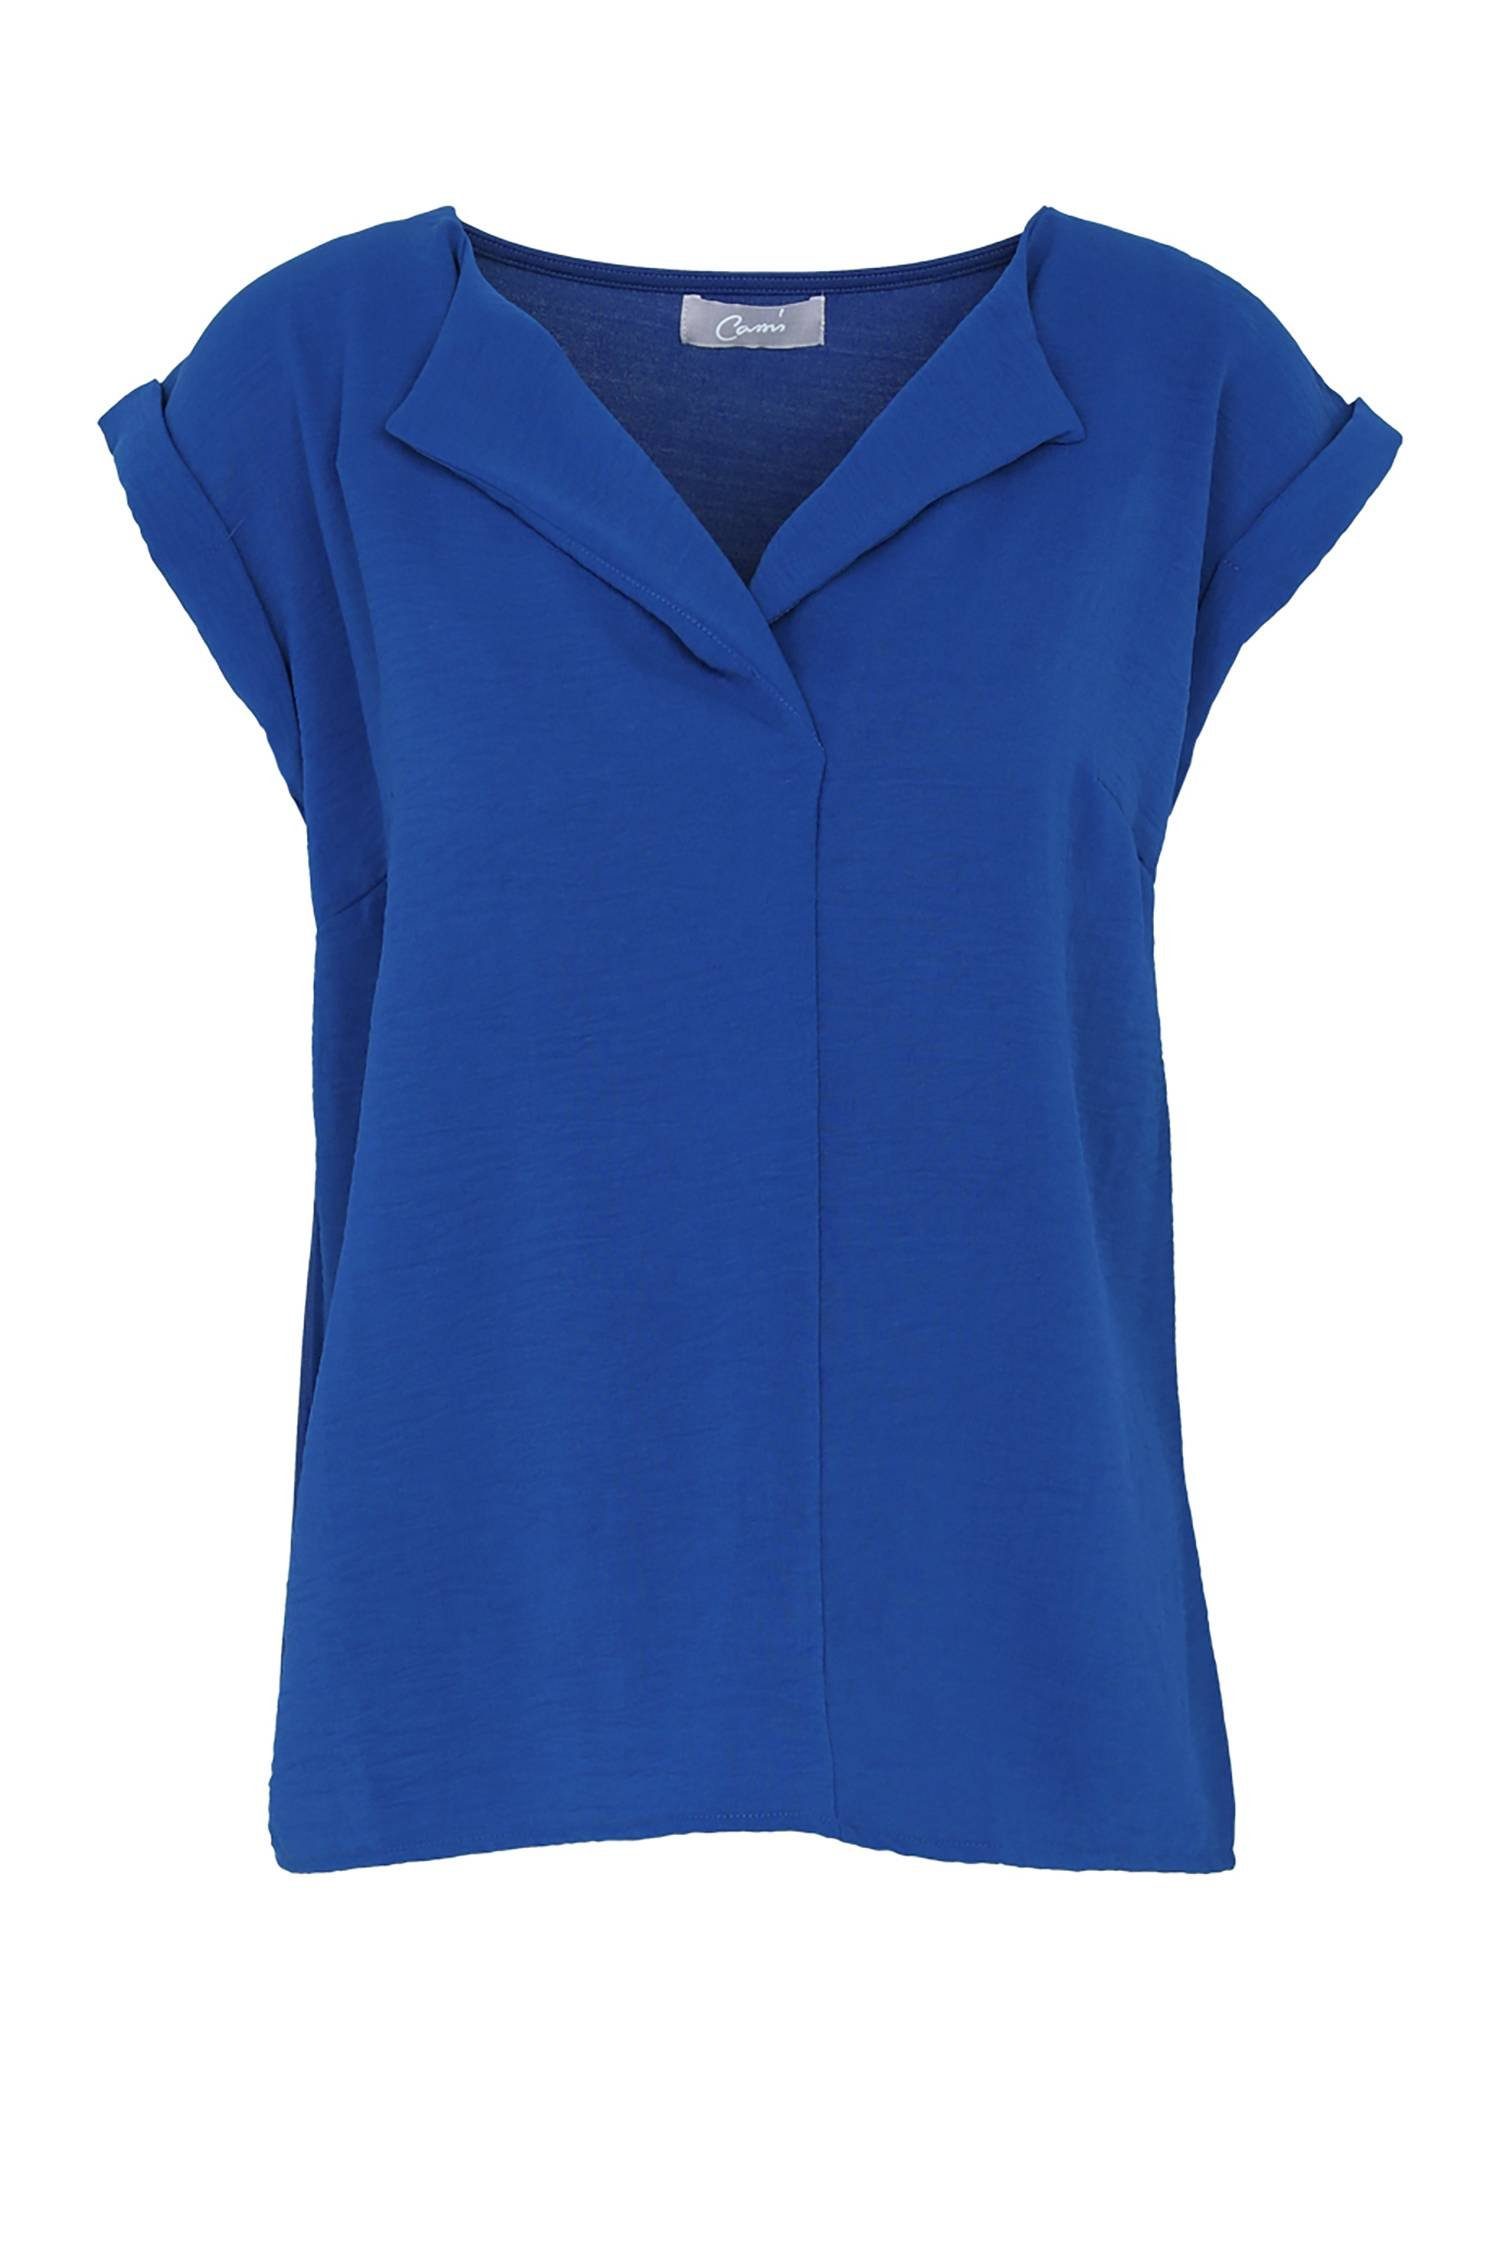 Cassis T-Shirt Unifarbenes T-Shirt Mit Bearbeitetem Kragen Blau Bic